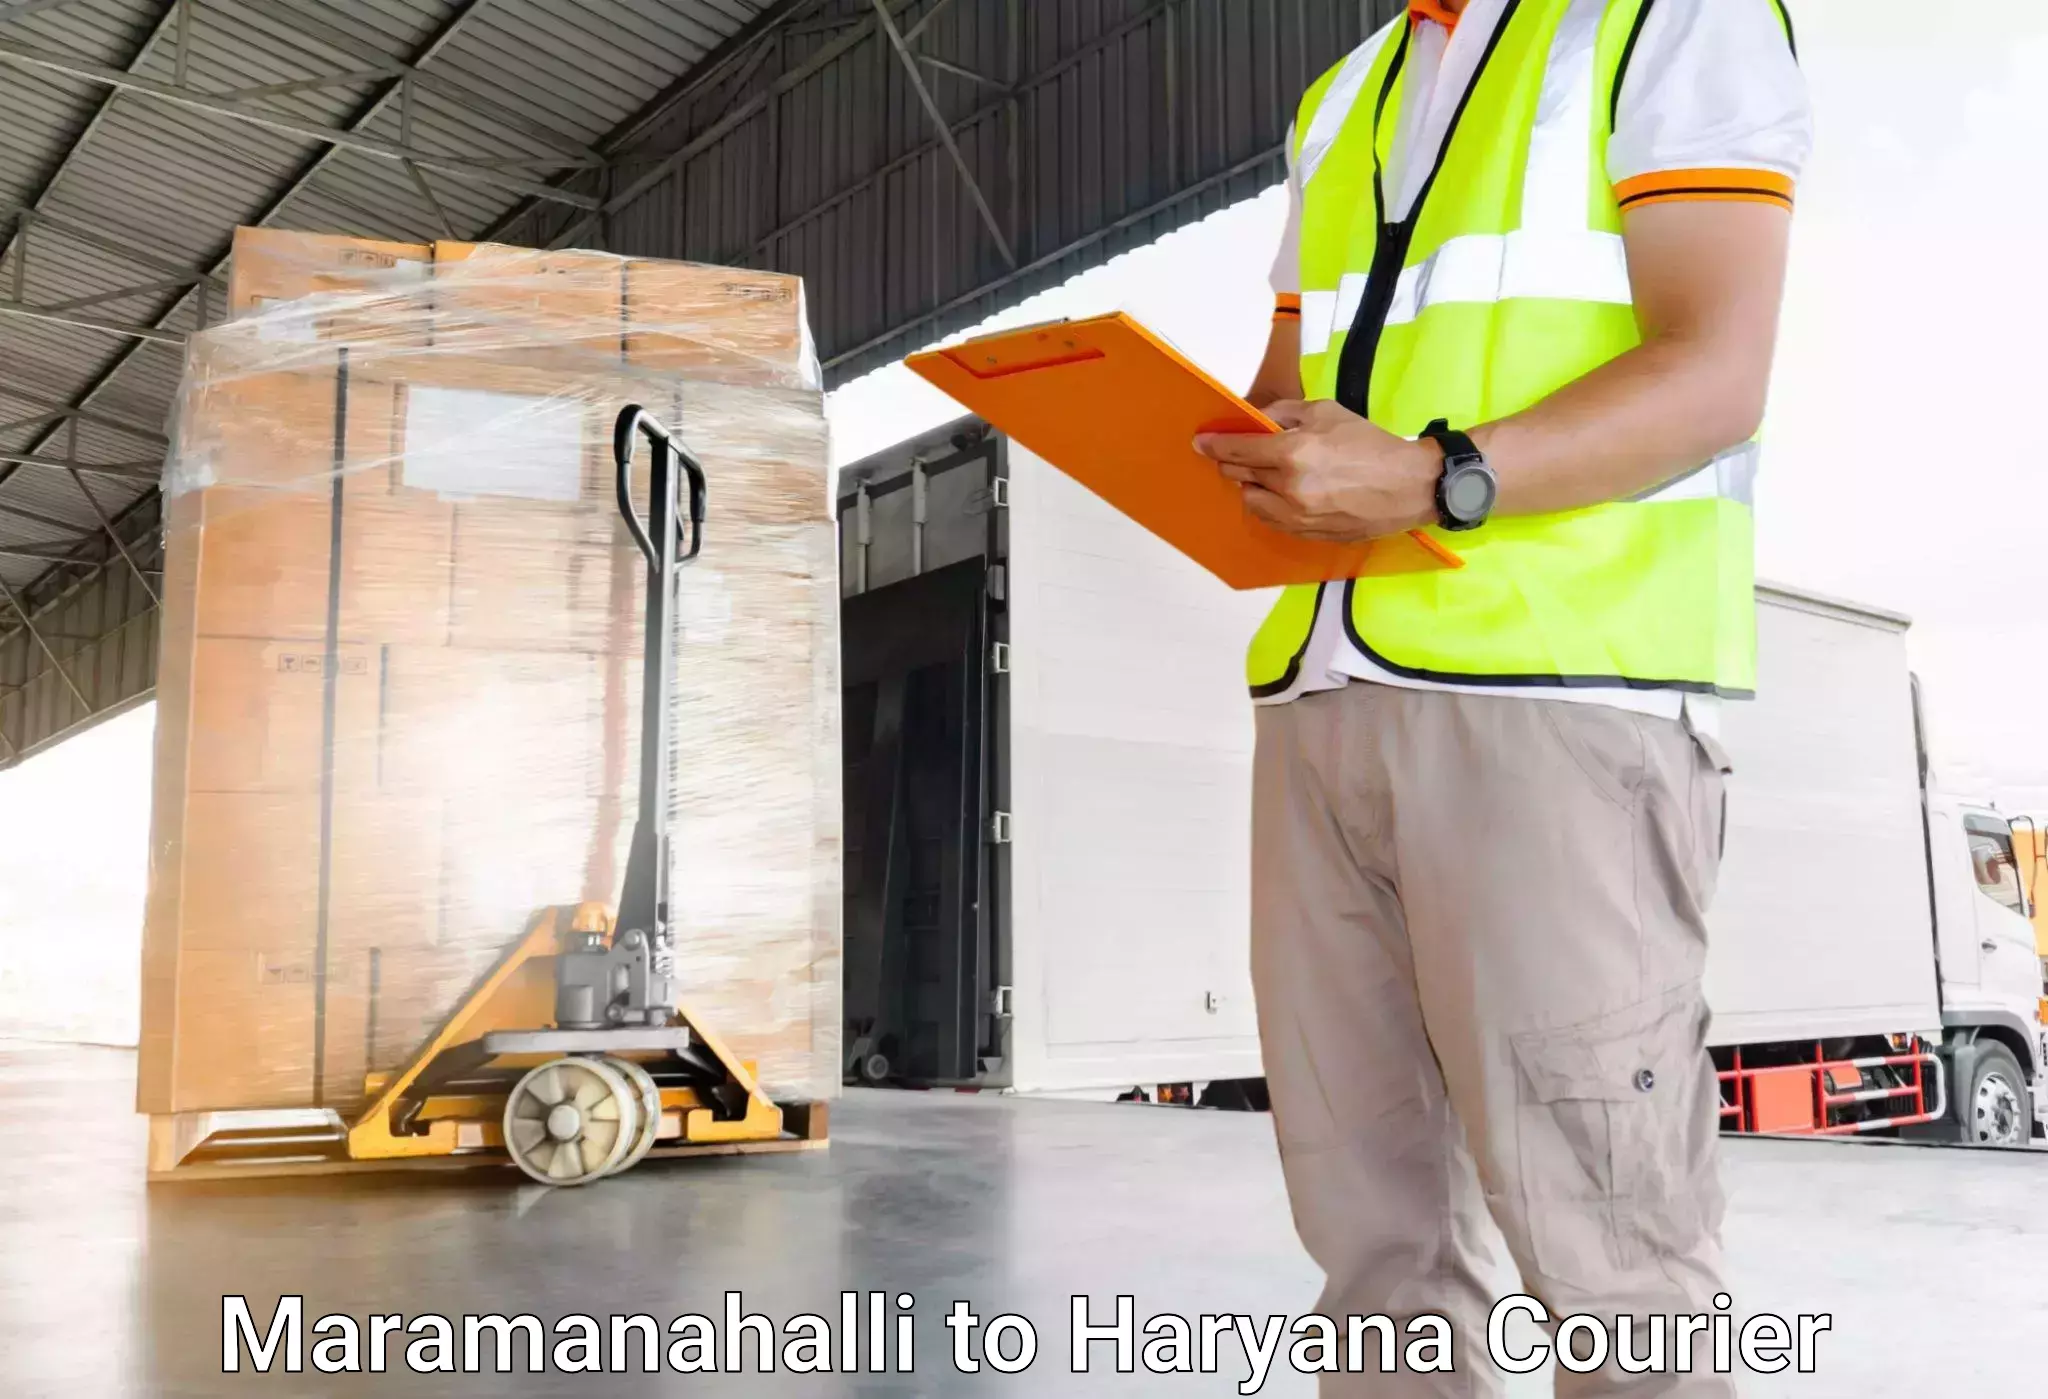 Luggage delivery app Maramanahalli to Charkhari